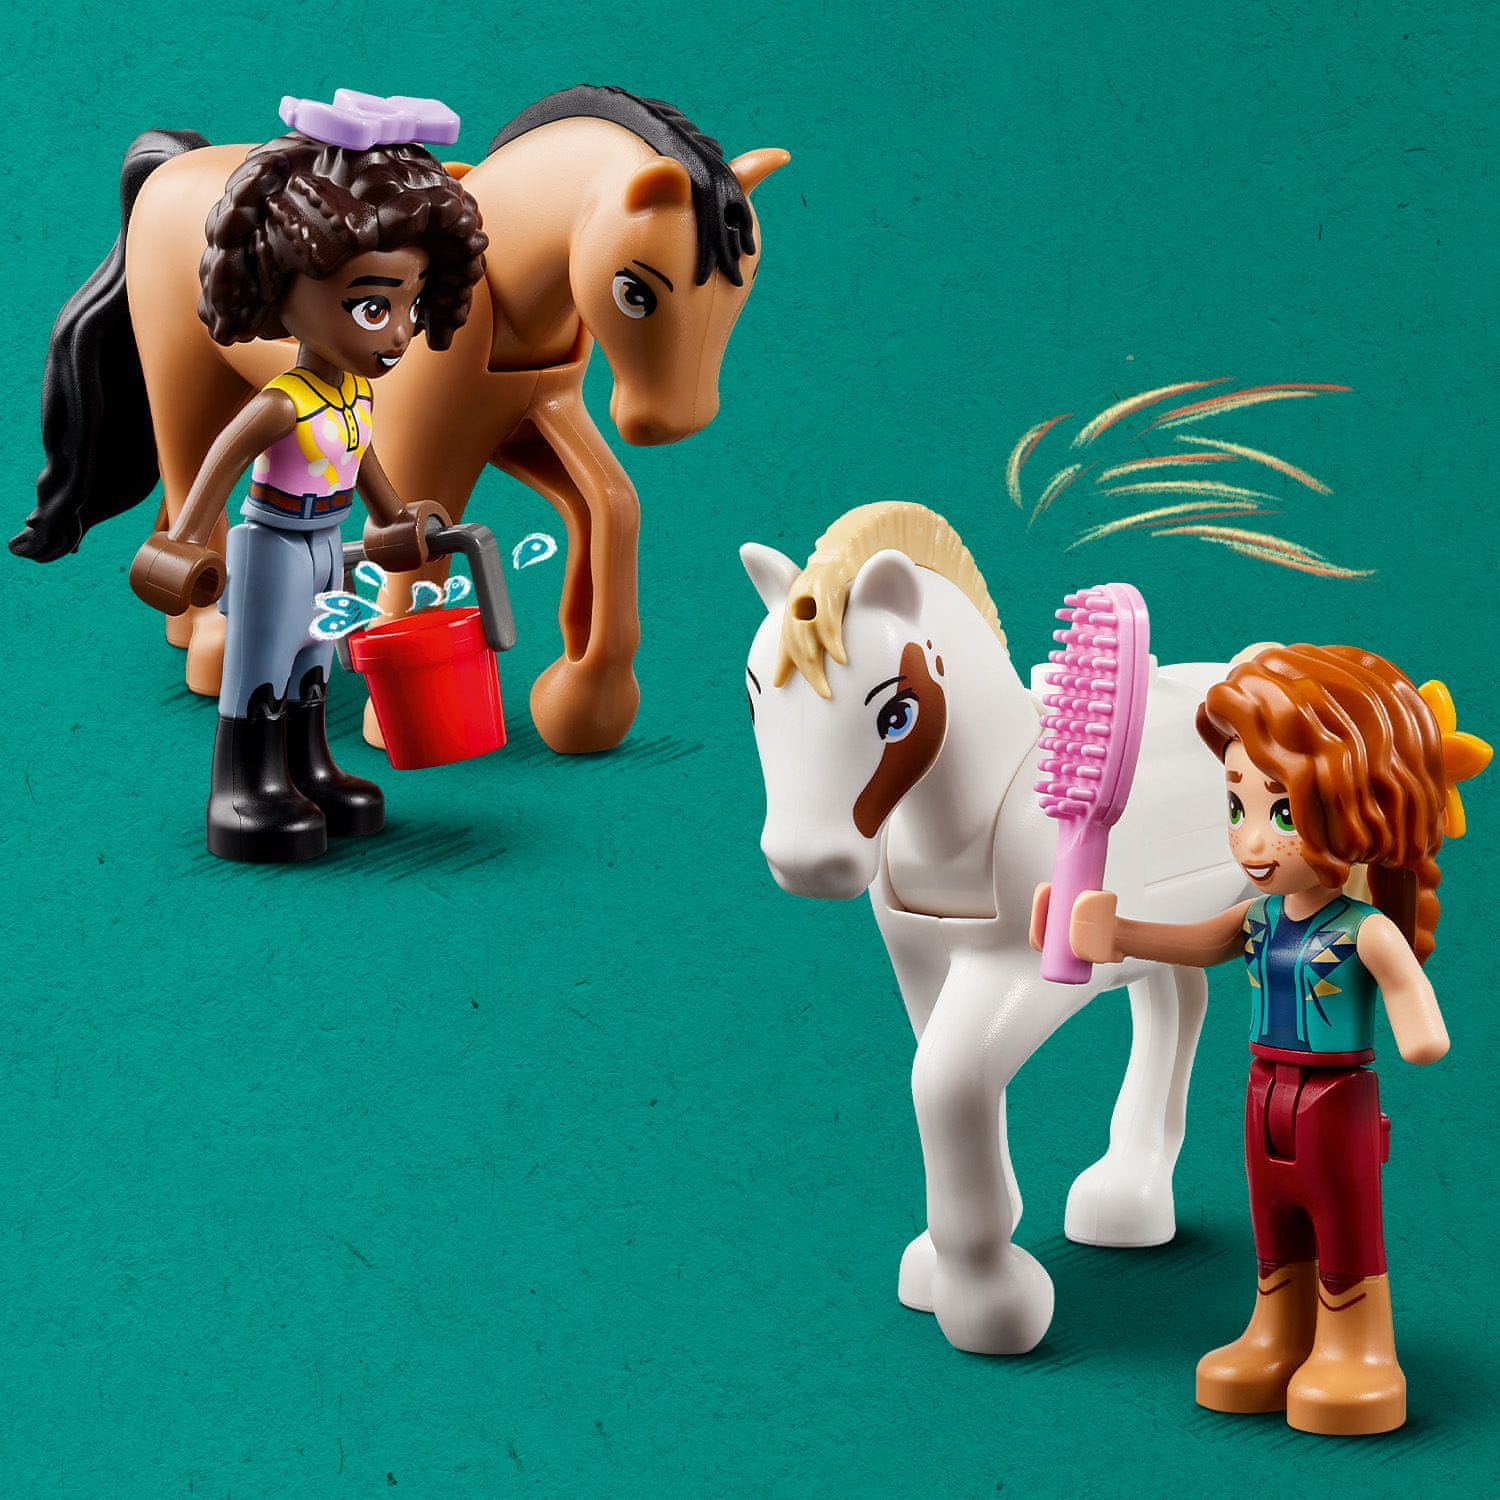 LEGO Friends 41745 Autumn a její koňská stáj